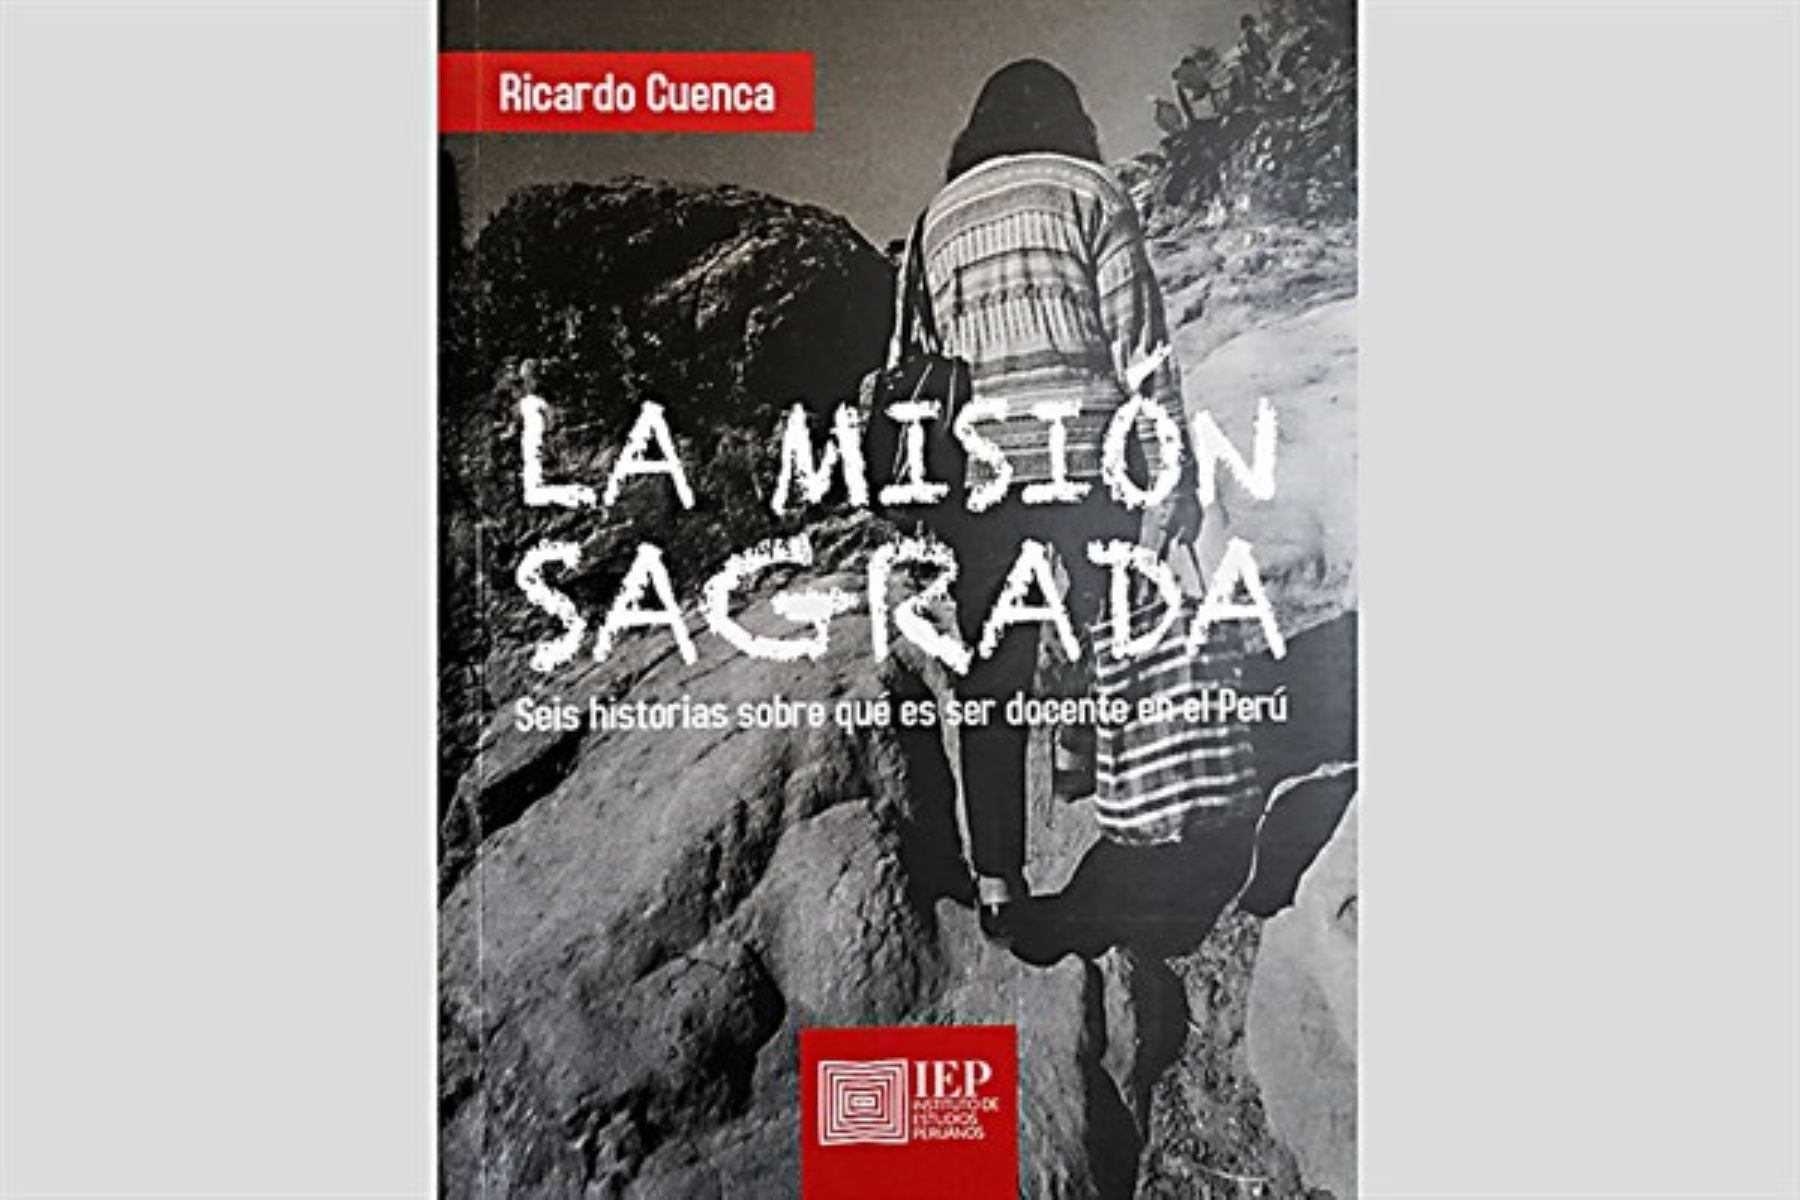 Presentan libro "La Misión Sagrada" sobre la docencia en el Perú.